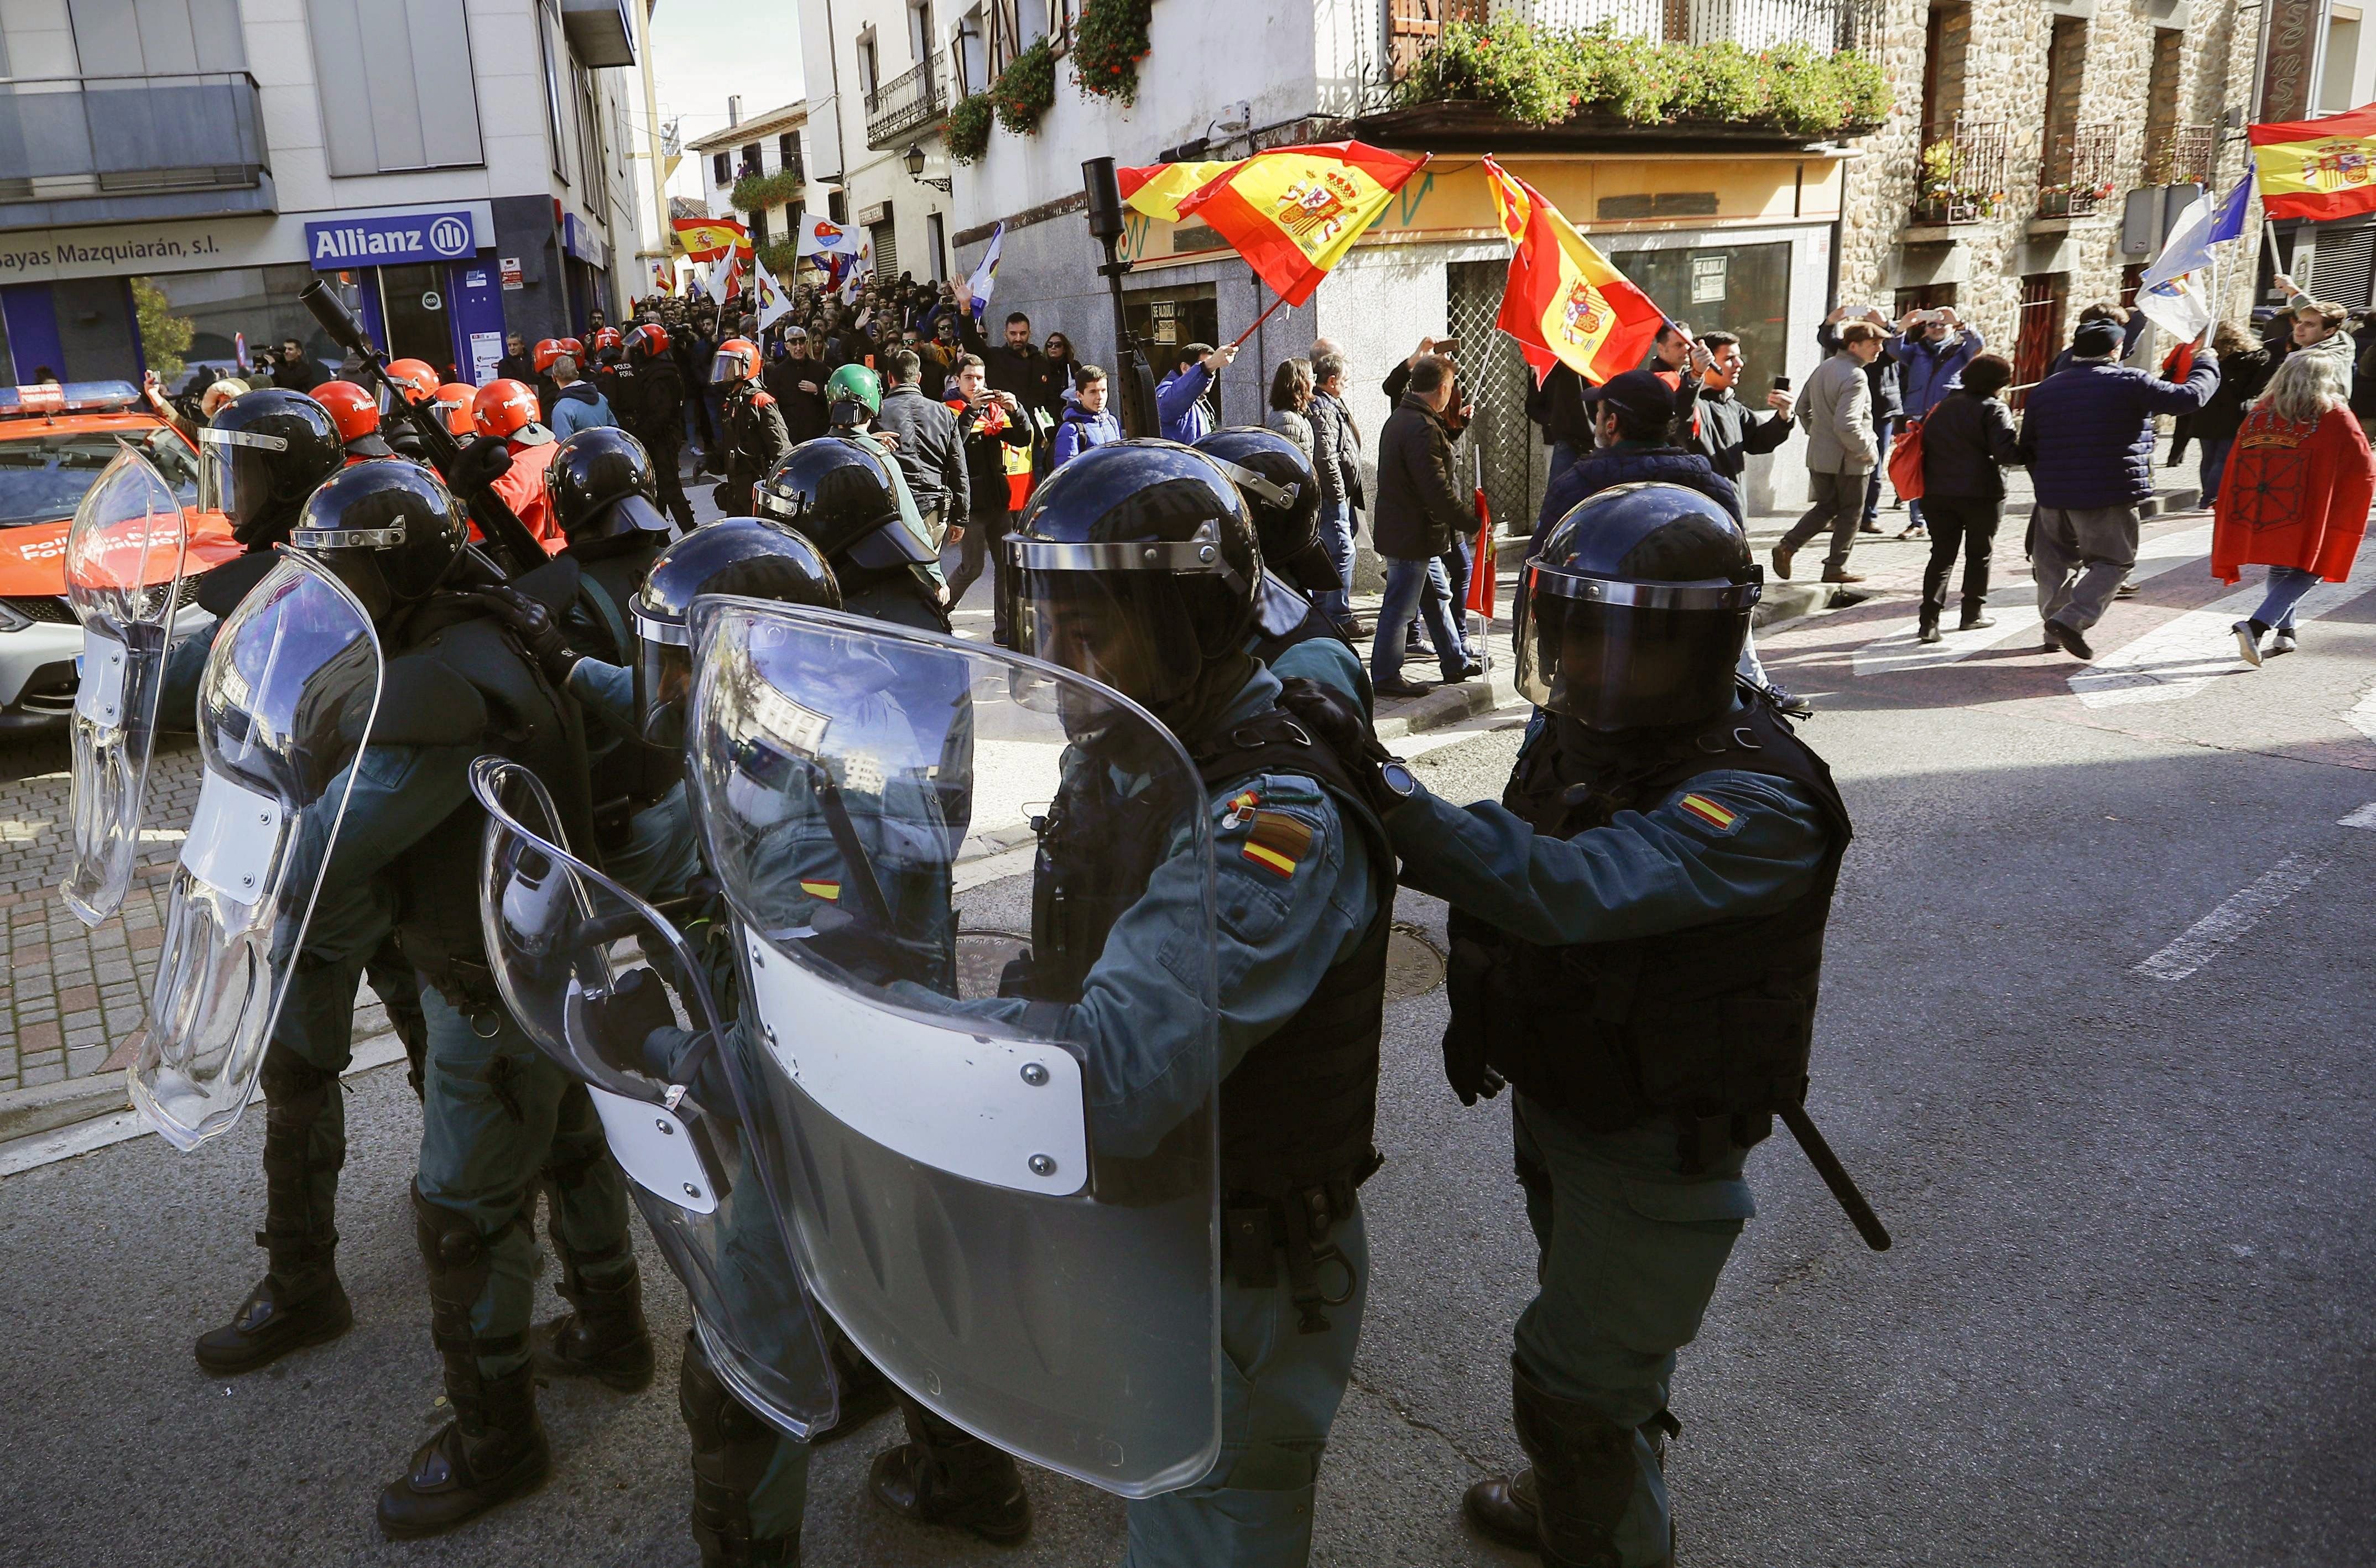 El PSOE és ETA, o gairebé, per a la premsa espanyola